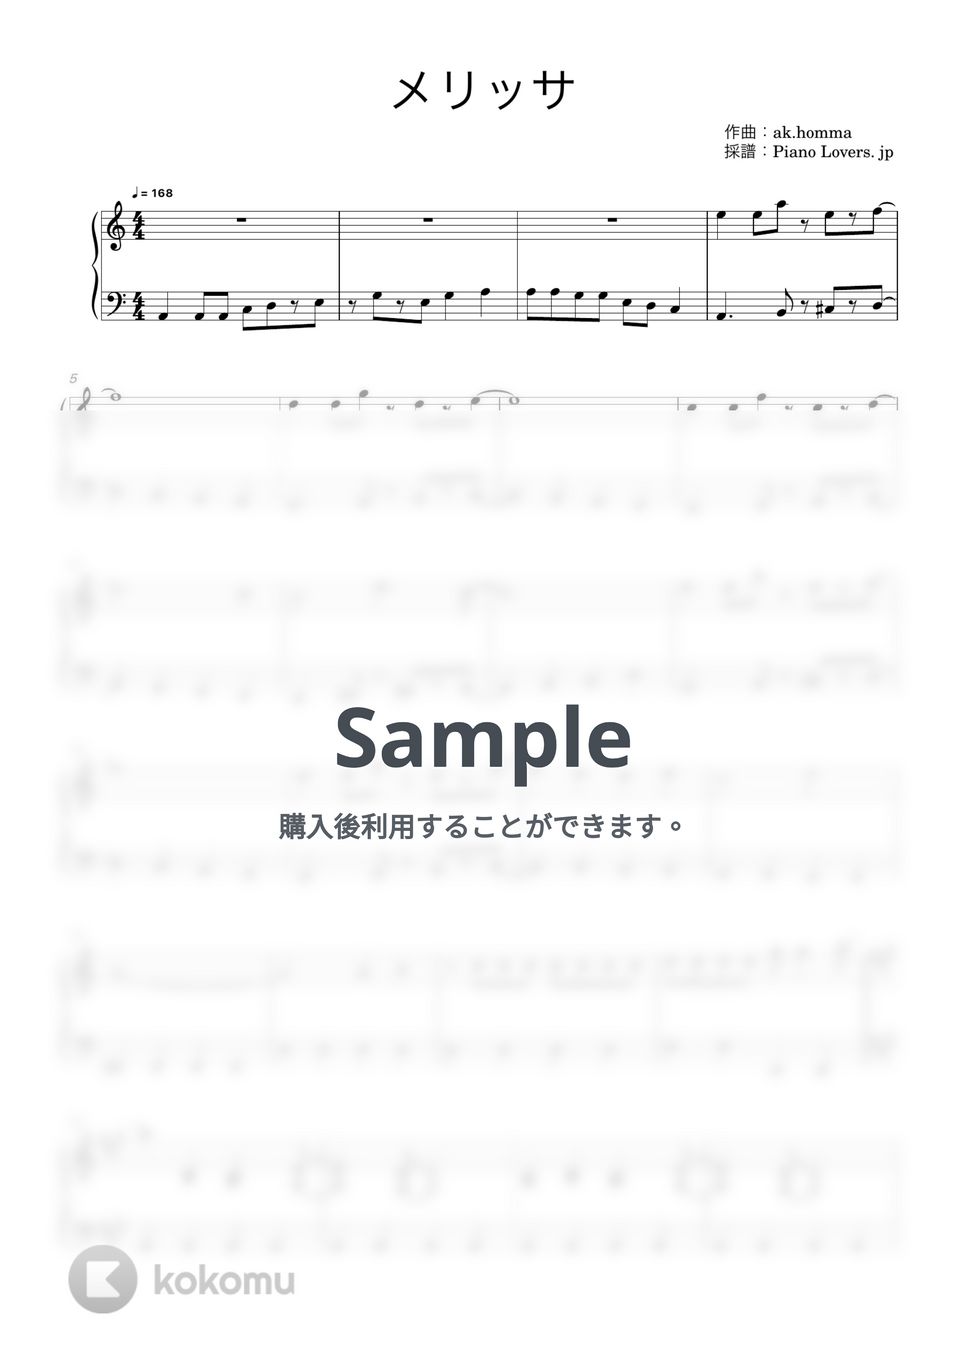 ポルノグラフィティ - メリッサ (鋼の錬金術師) by Piano Lovers. jp